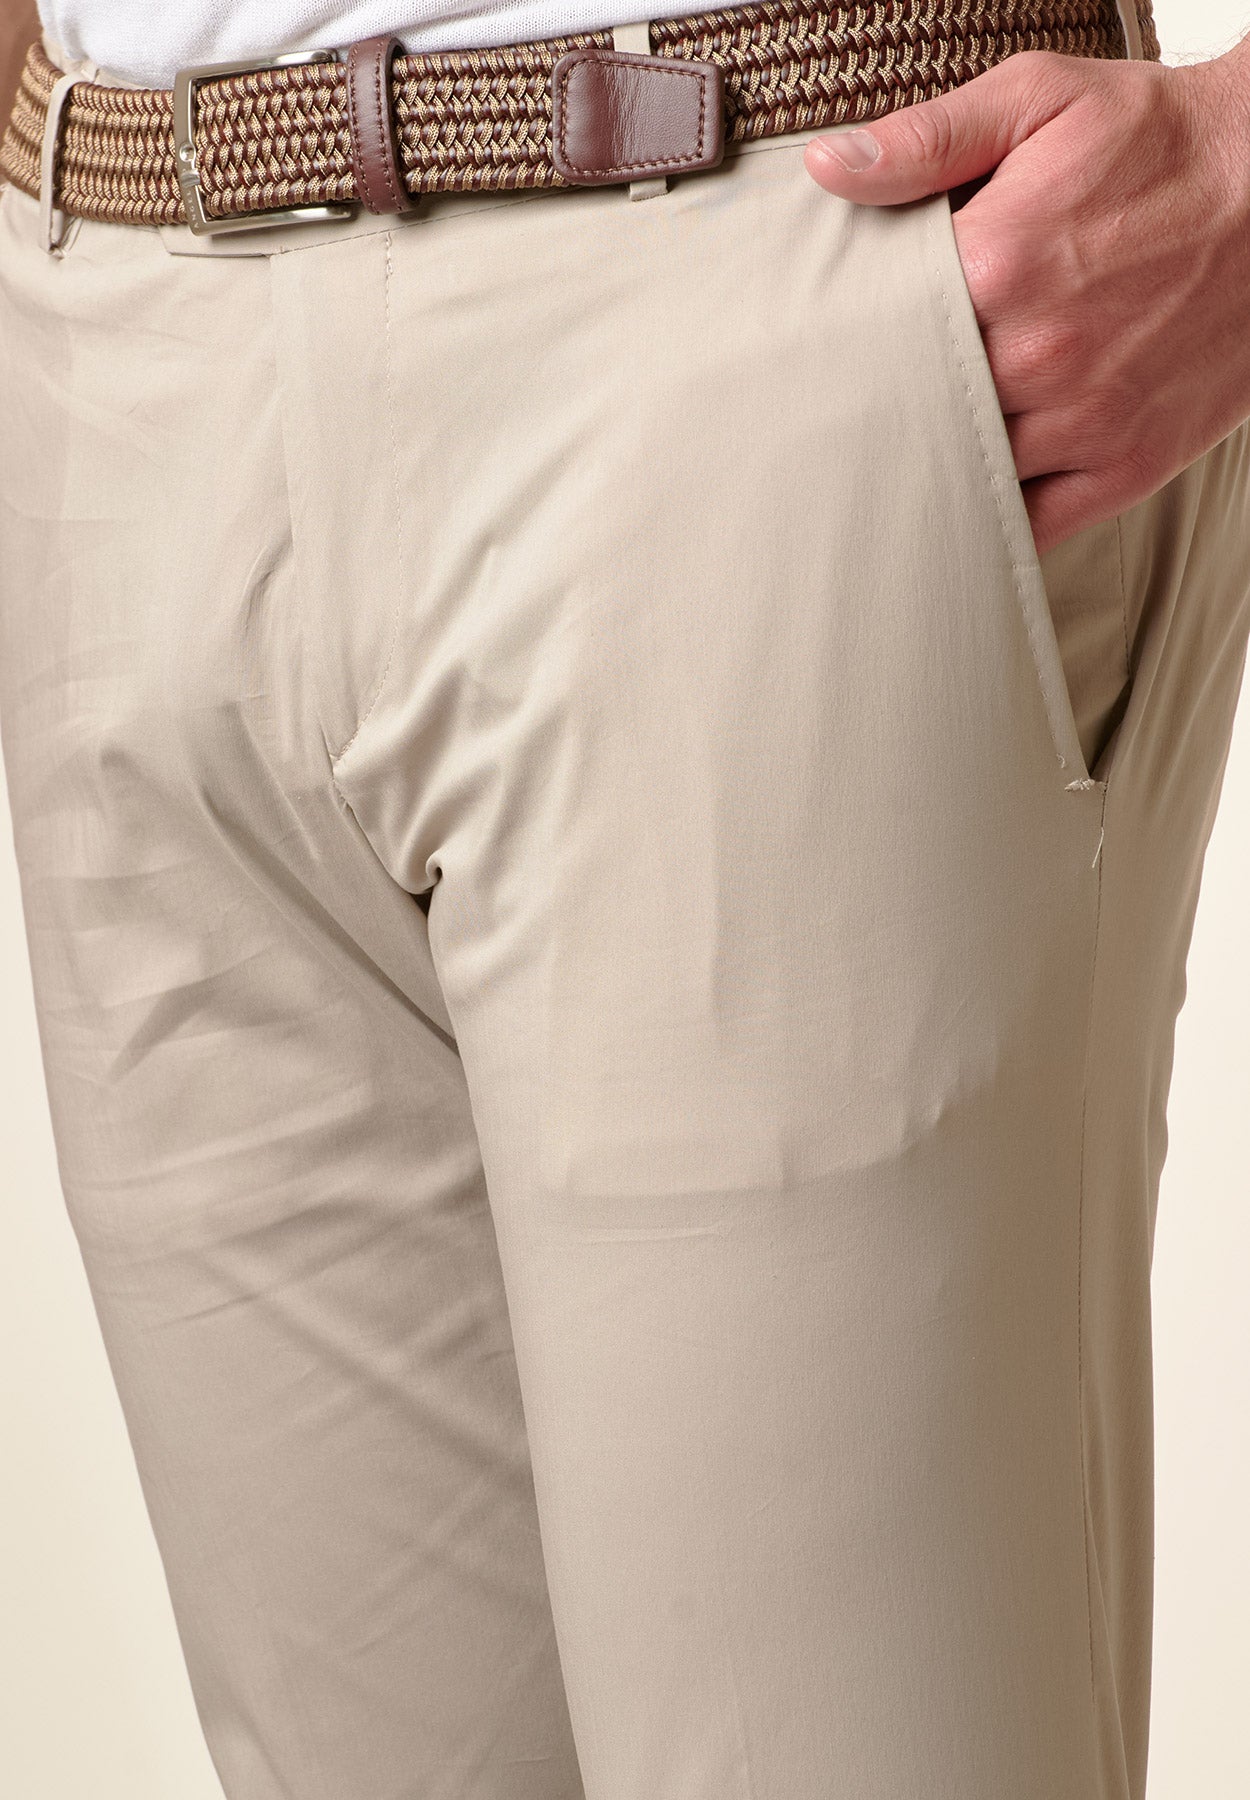 Pantalone beige cotone tecnico risvolto slim fit